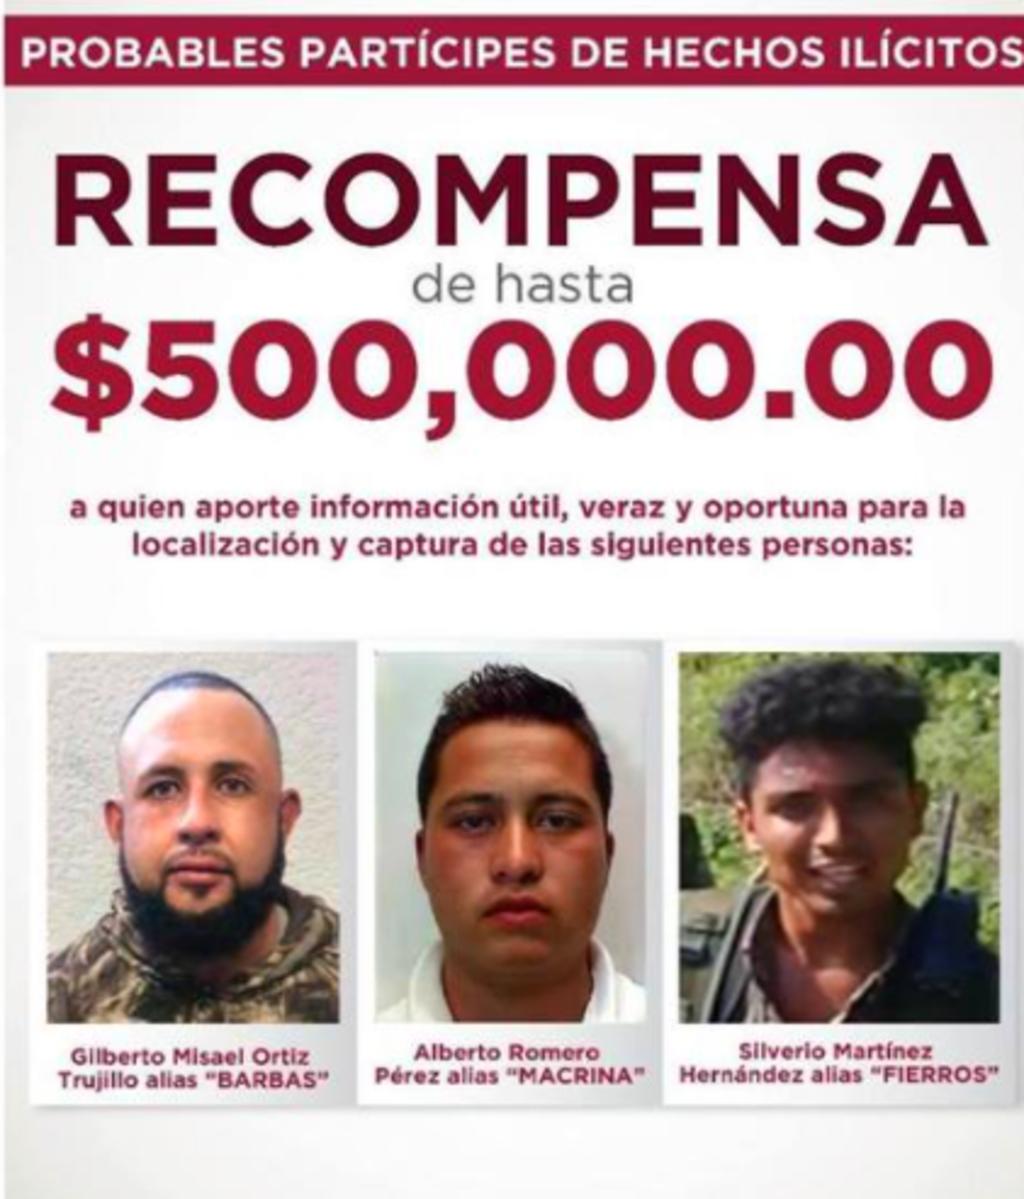 Buscan a 'El Macrina', 'El Fierros' y 'El Barbas' por emboscada de policías en Edomex